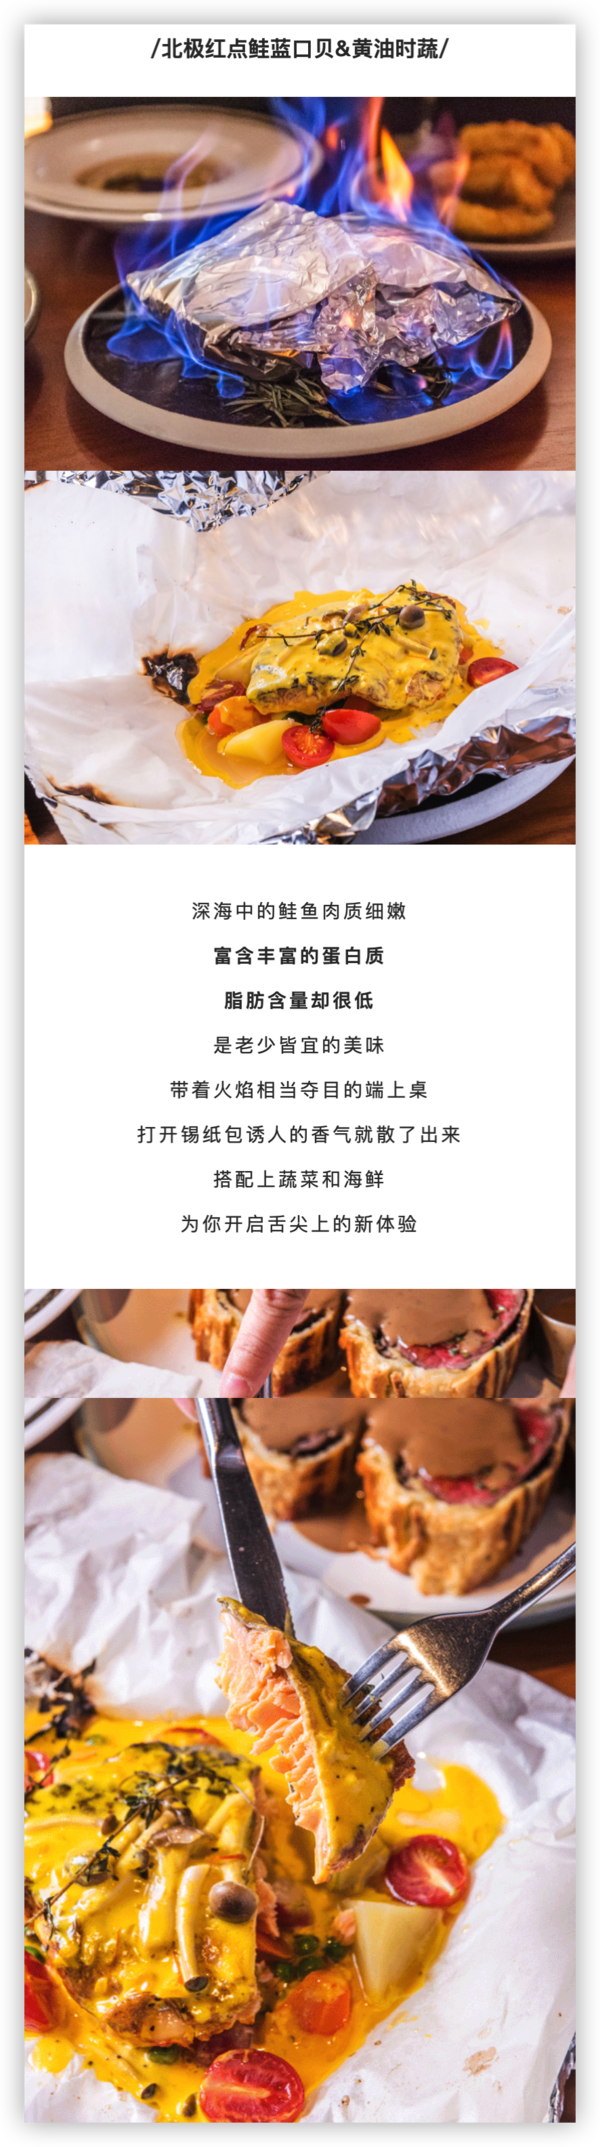 上海思南公馆 Shanghai Slims惠灵顿牛排双人套餐